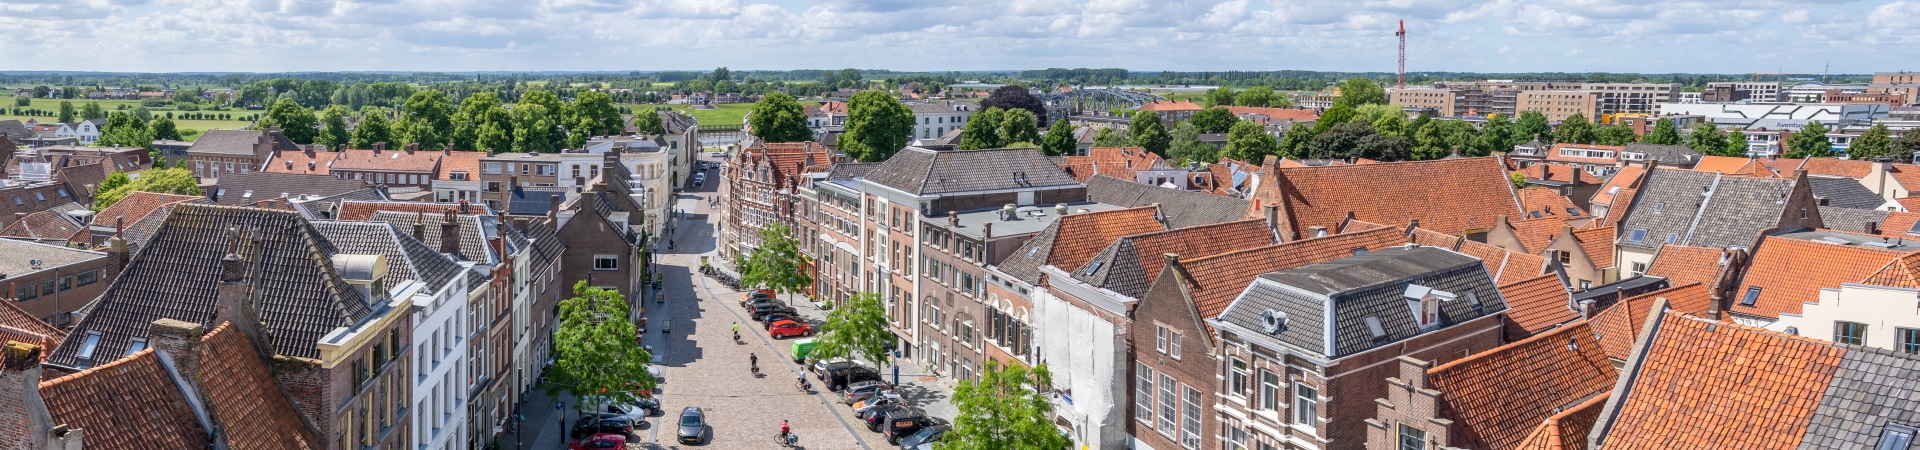 Uitzicht op monumentale daken en de Veluwe in de verte, vanaf de Wijnhuistoren